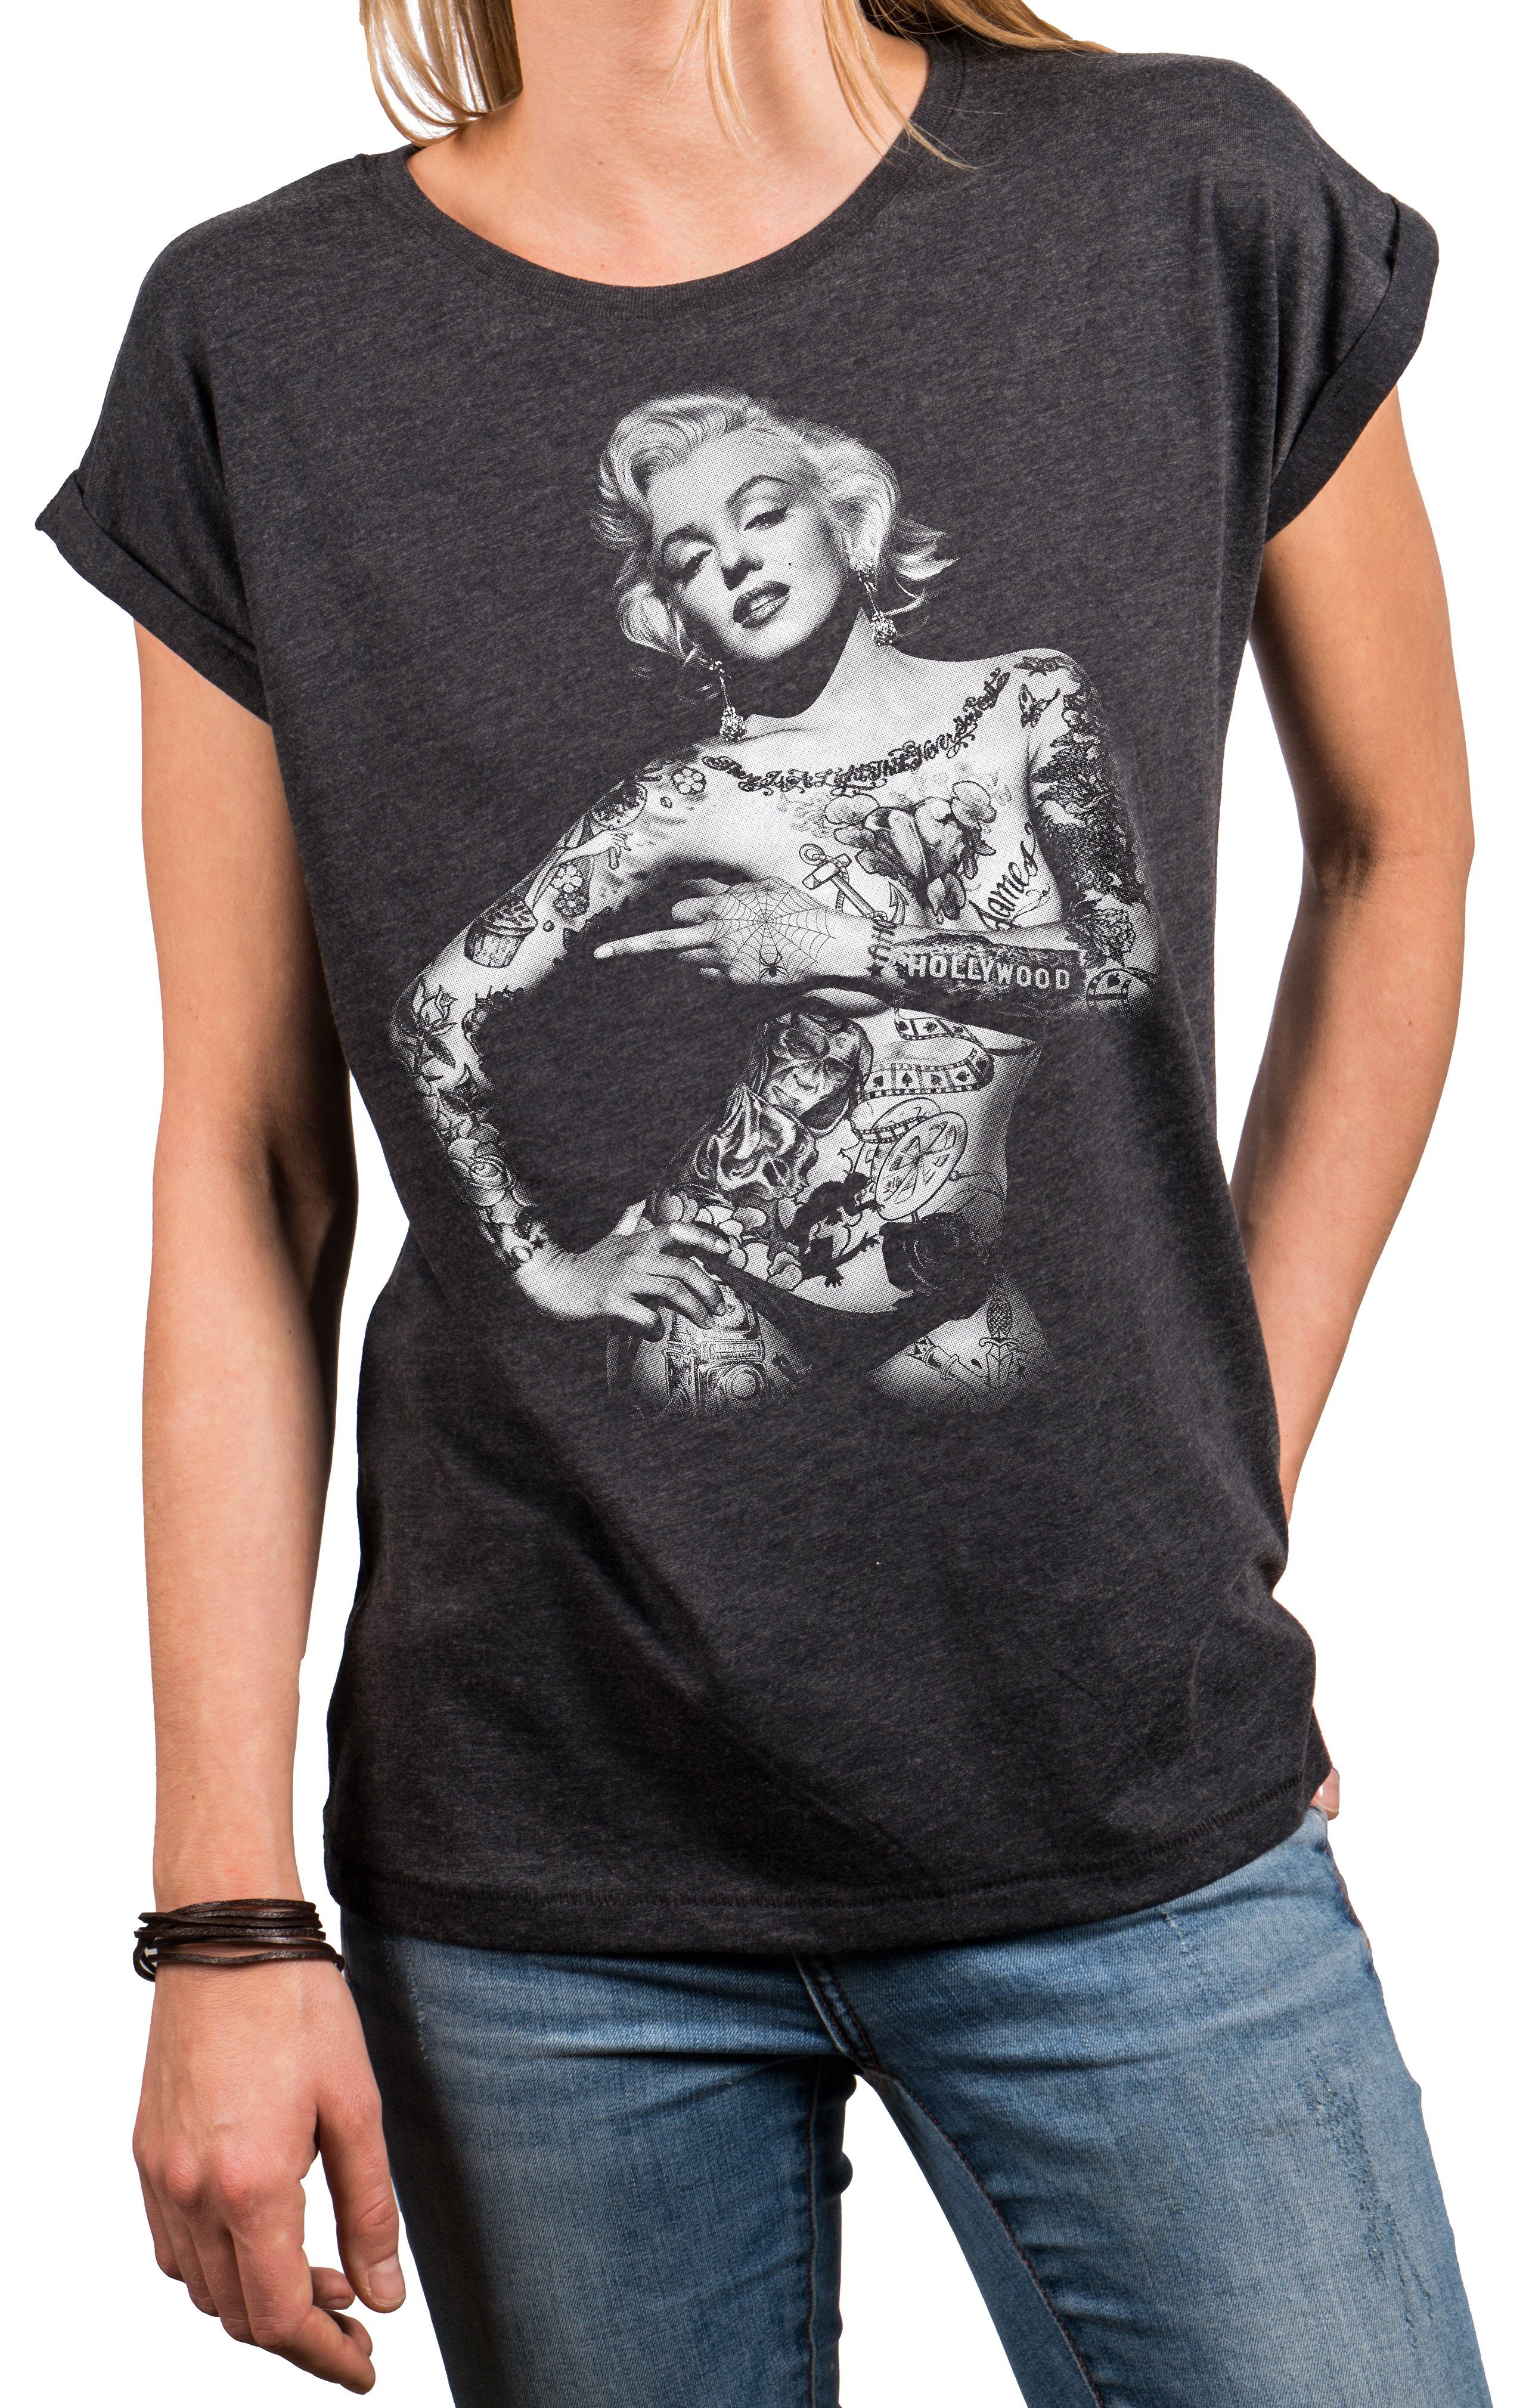 MAKAYA Print-Shirt Damen Lässig Sommer Top Aufdruck Tattoo Vintage Rock Motiv Cool Frech (Kurzarm Rundhals, Schwarz, Grau, Blau) Baumwolle, große Größen